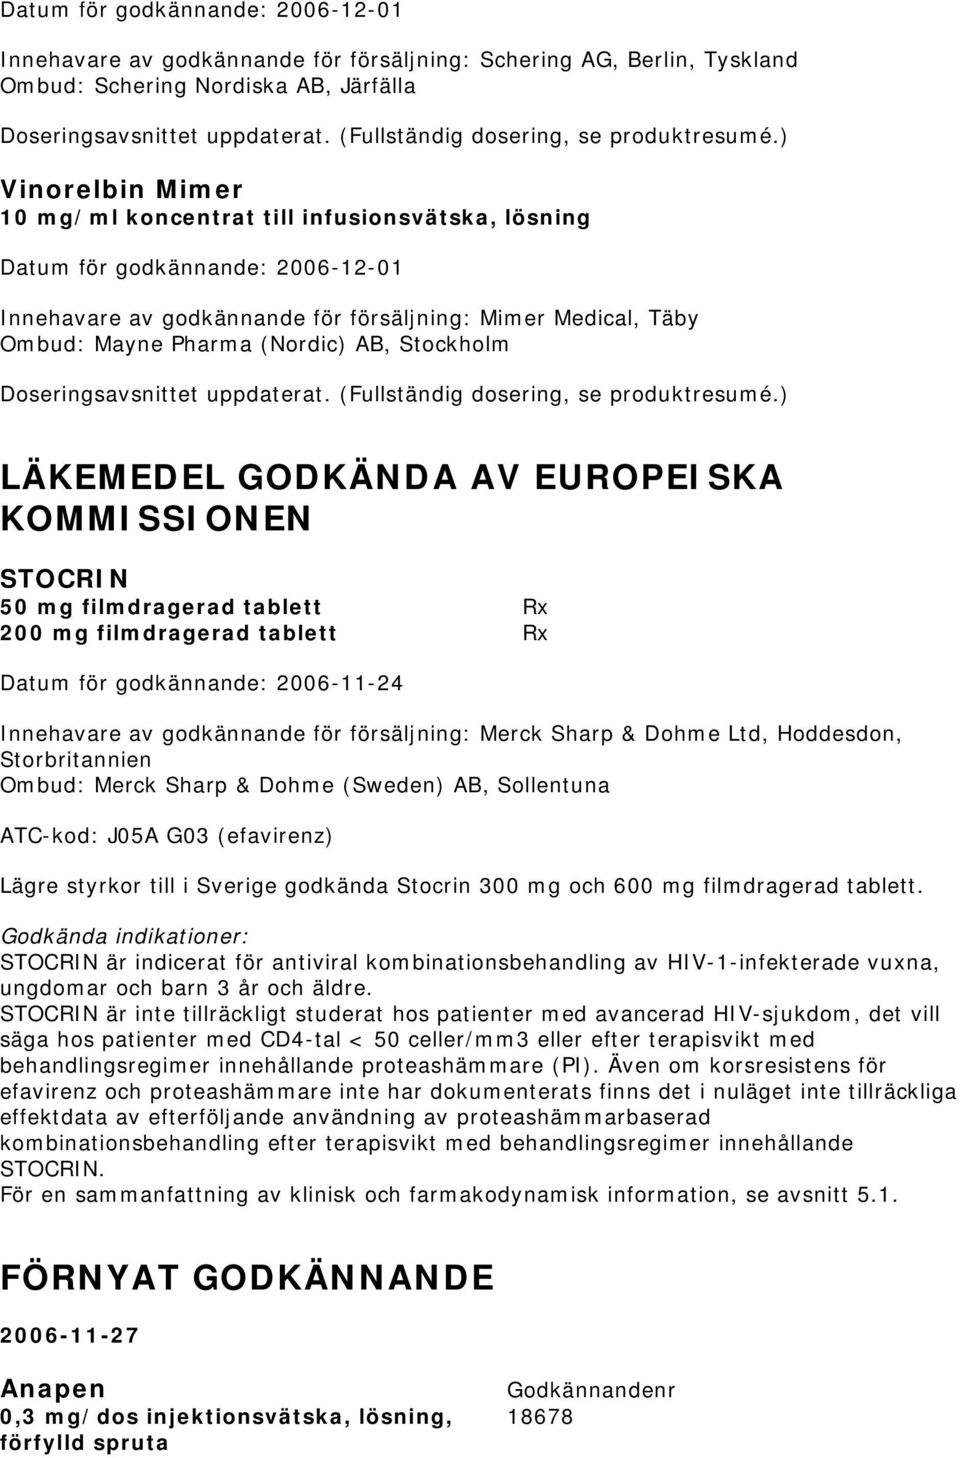 tablett Rx Datum för godkännande: 2006-11-24 Innehavare av godkännande för försäljning: Merck Sharp & Dohme Ltd, Hoddesdon, Storbritannien Ombud: Merck Sharp & Dohme (Sweden) AB, Sollentuna ATC-kod: